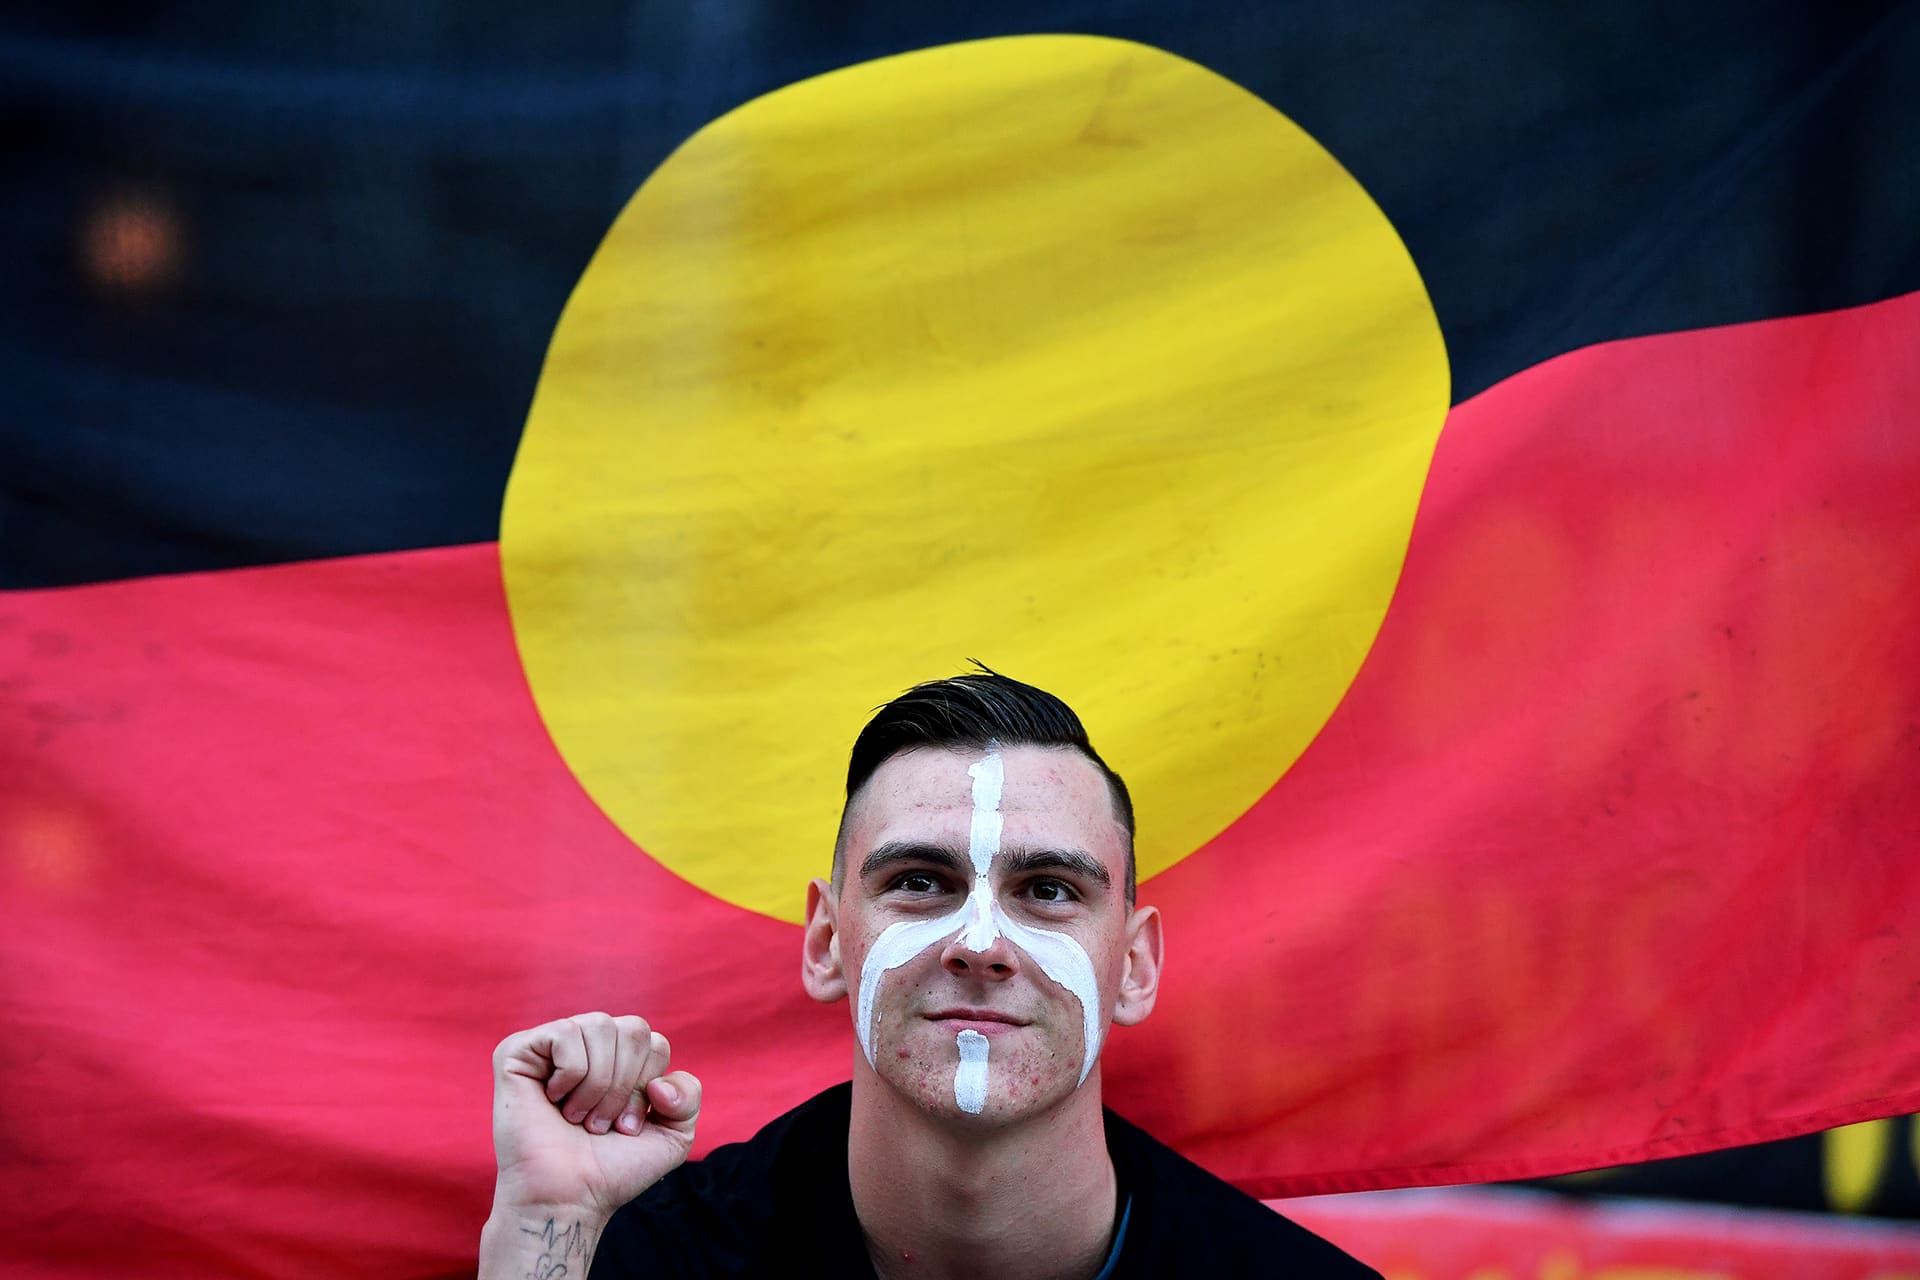 Aboriginaalien oikeuksia puolustava mielenosoitus Sydneyssa australiassa elokuussa 2017.